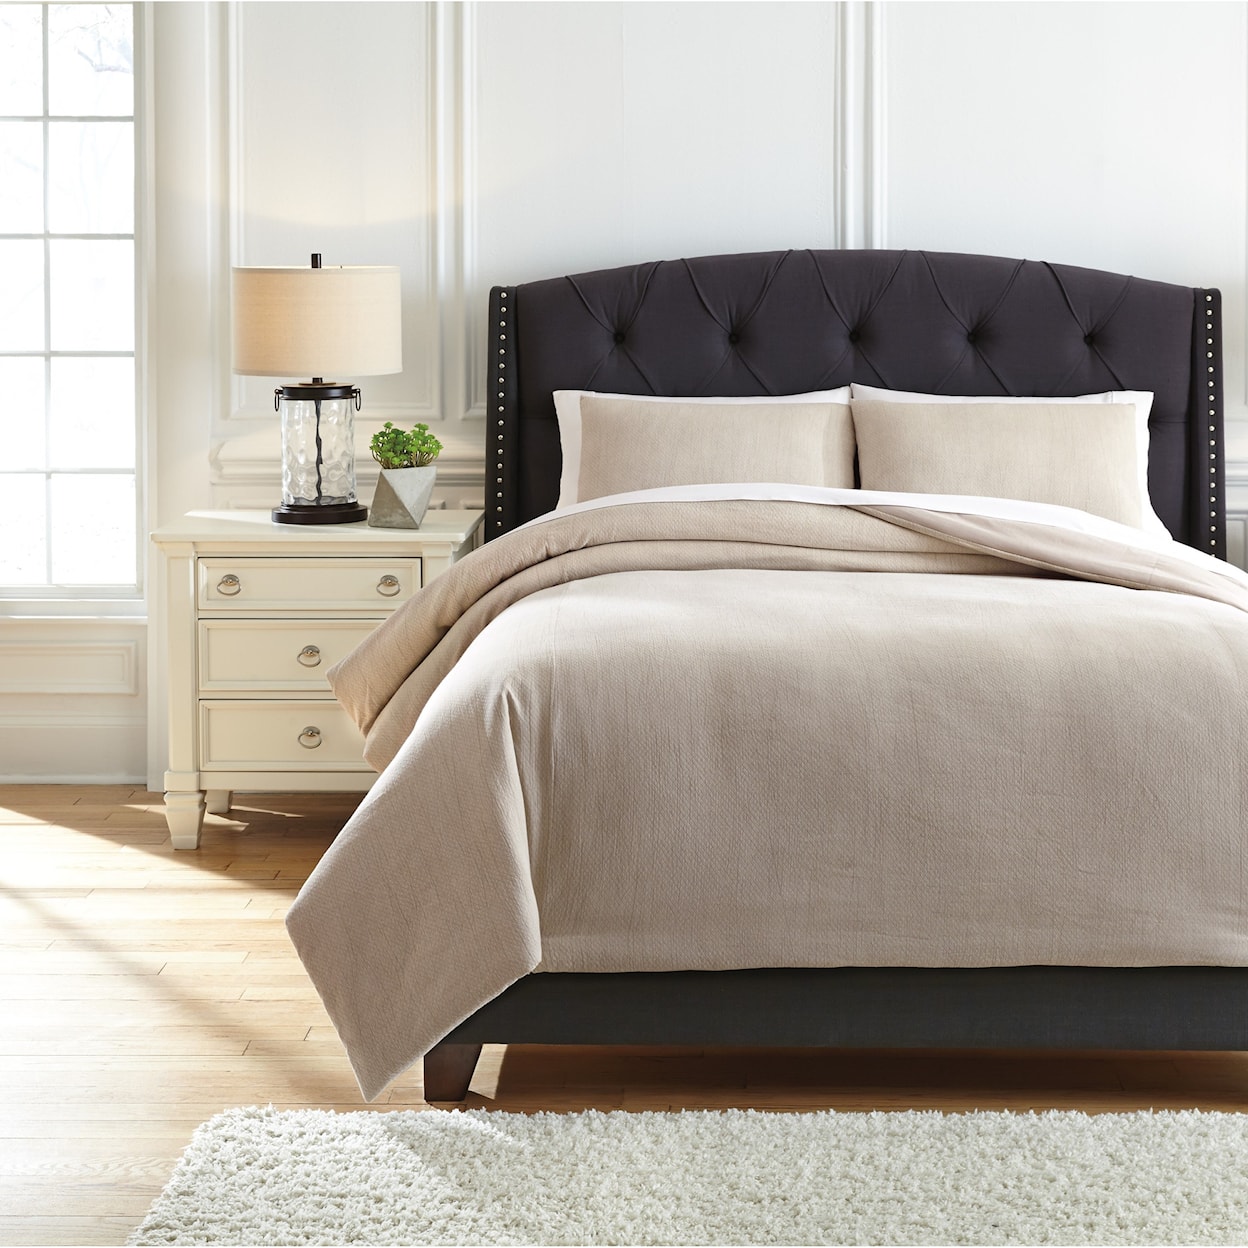 Signature Design by Ashley Furniture Bedding Sets King Mayda Beige Comforter Set